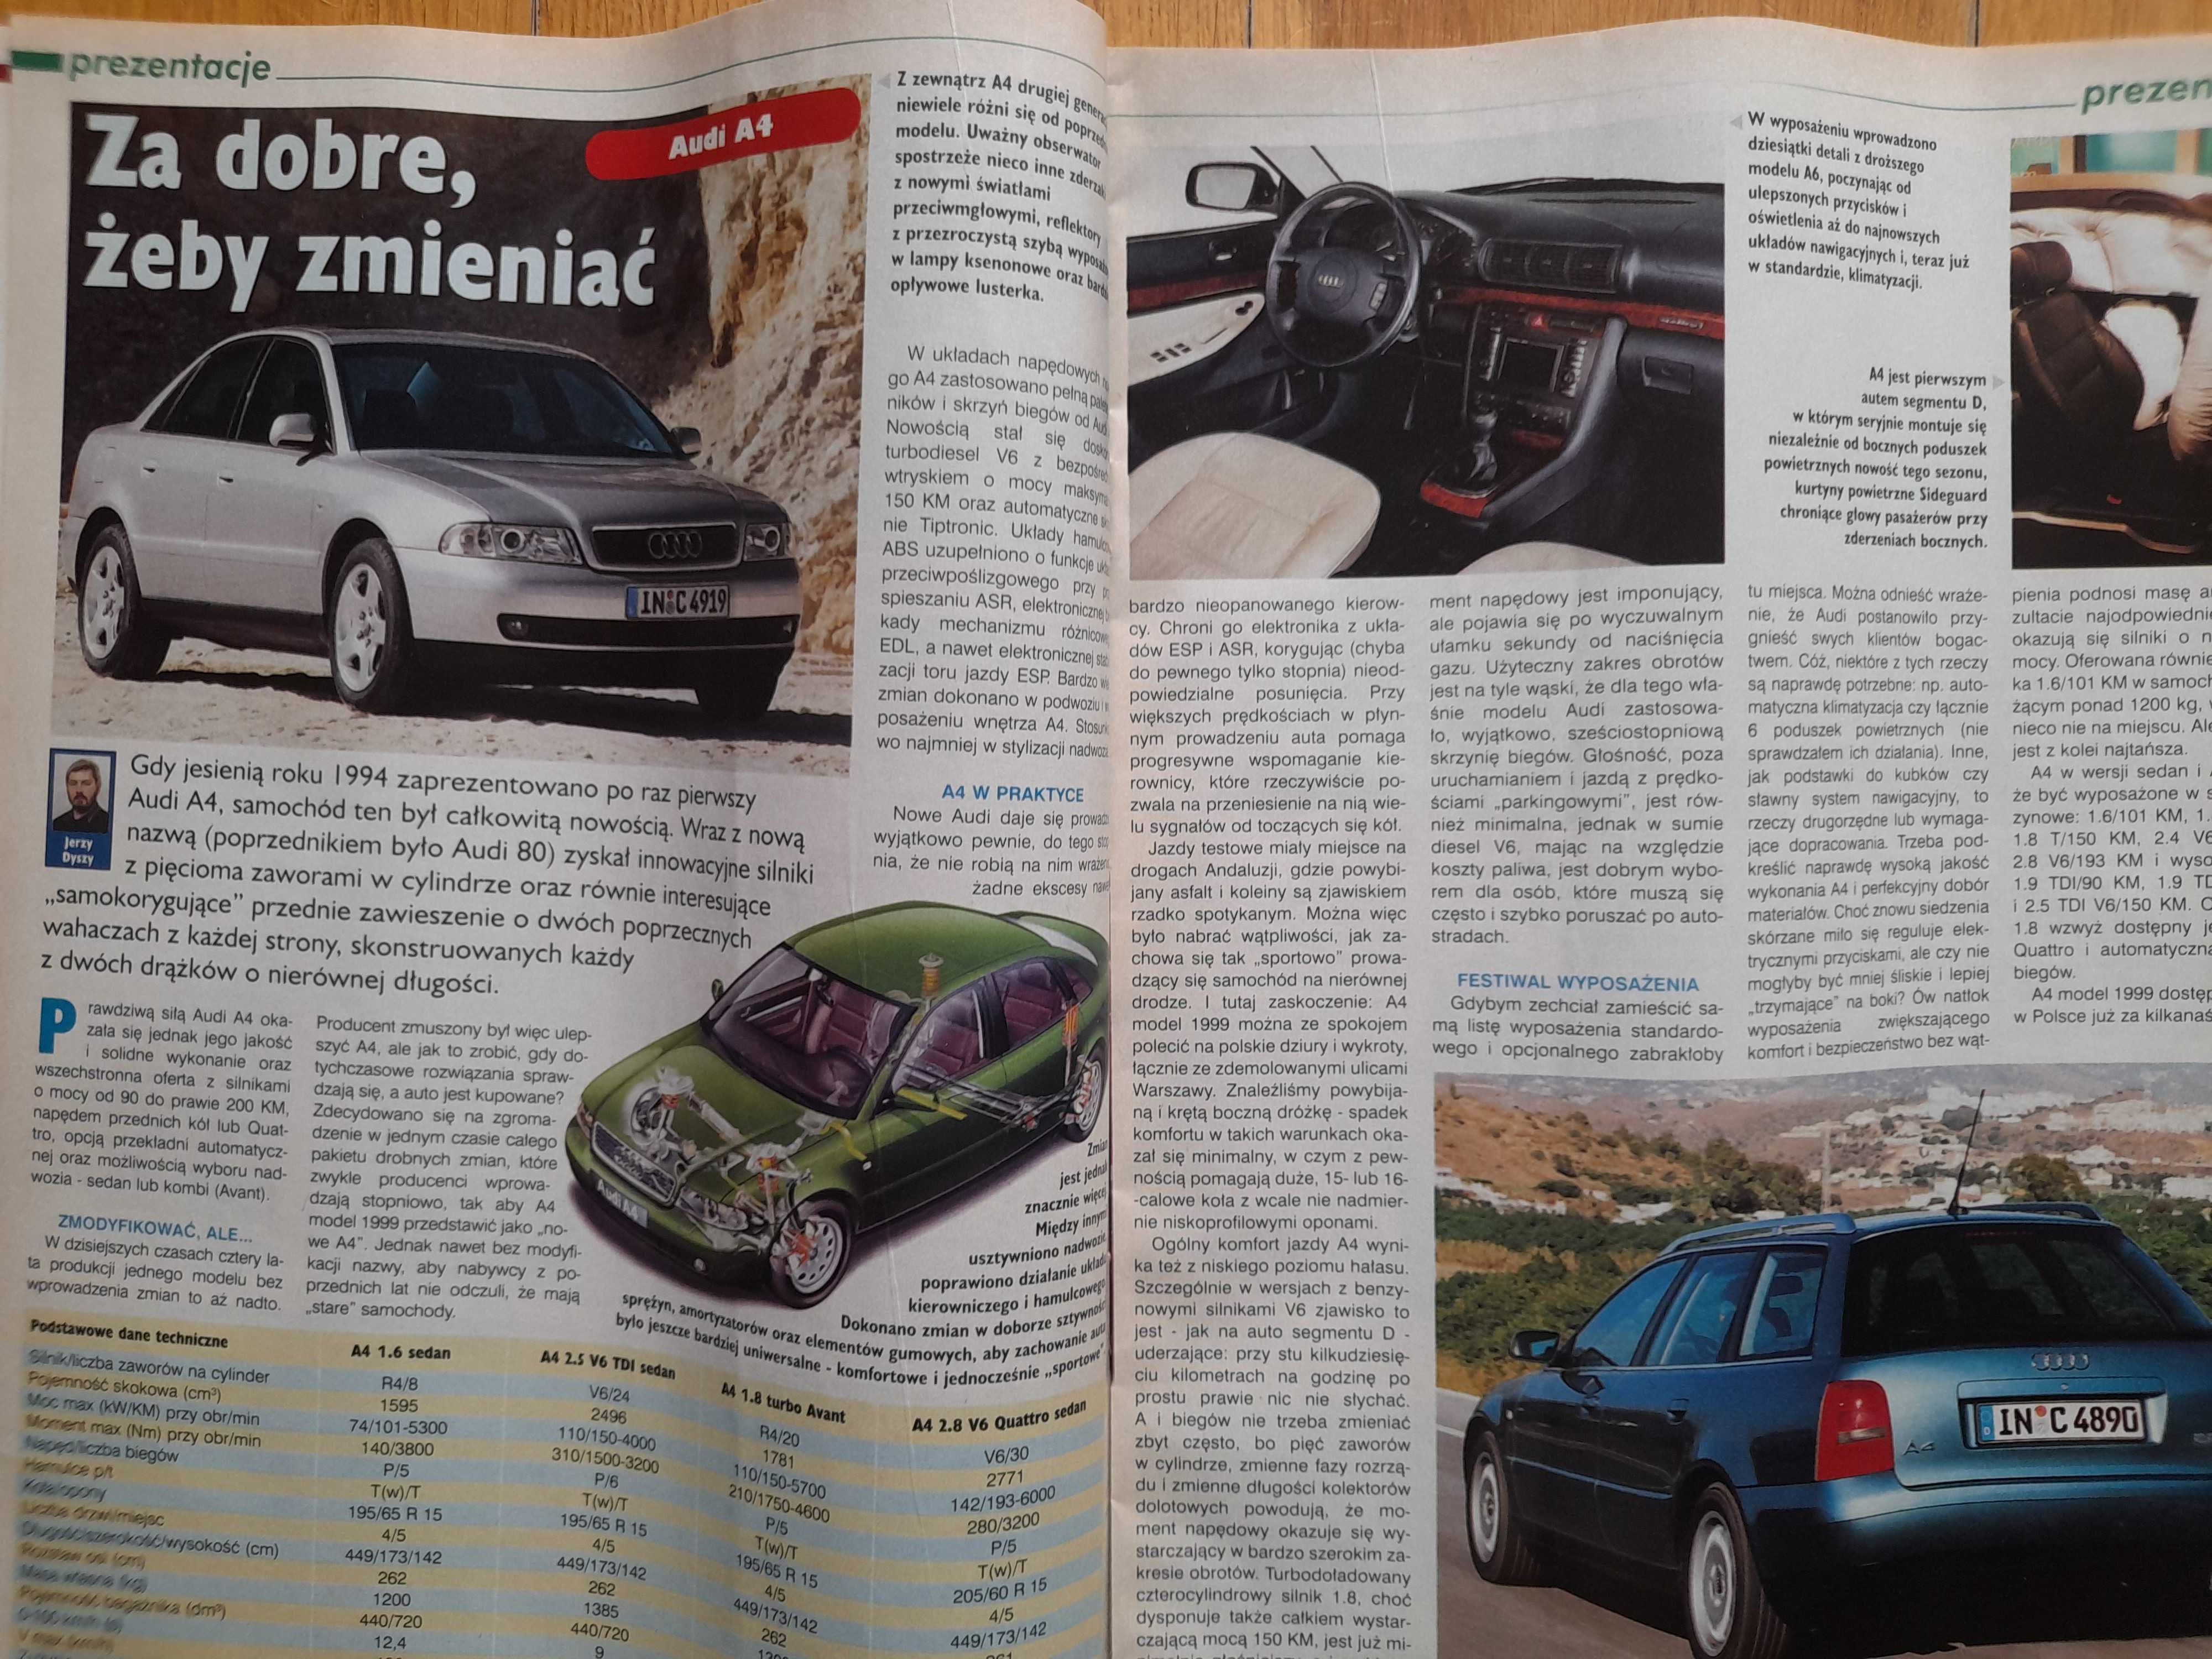 MOTOR Siena, Swift, Clio, Berlingo, Audi A4, Mazda MX-5 rok 1999